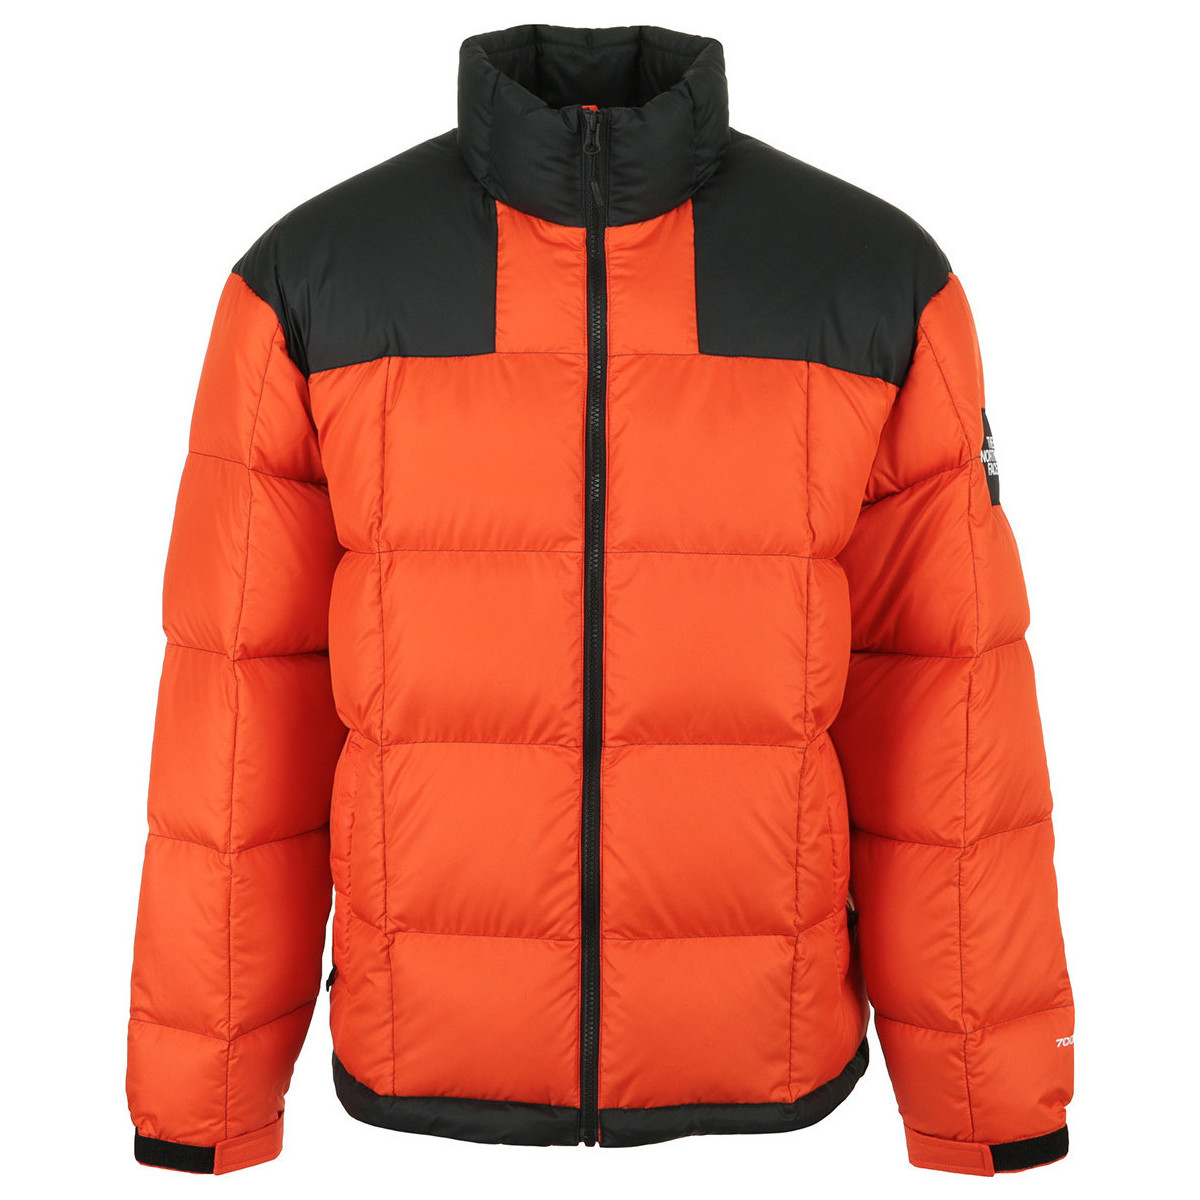 Textil Muži Prošívané bundy The North Face Lhotse Jacket Červená